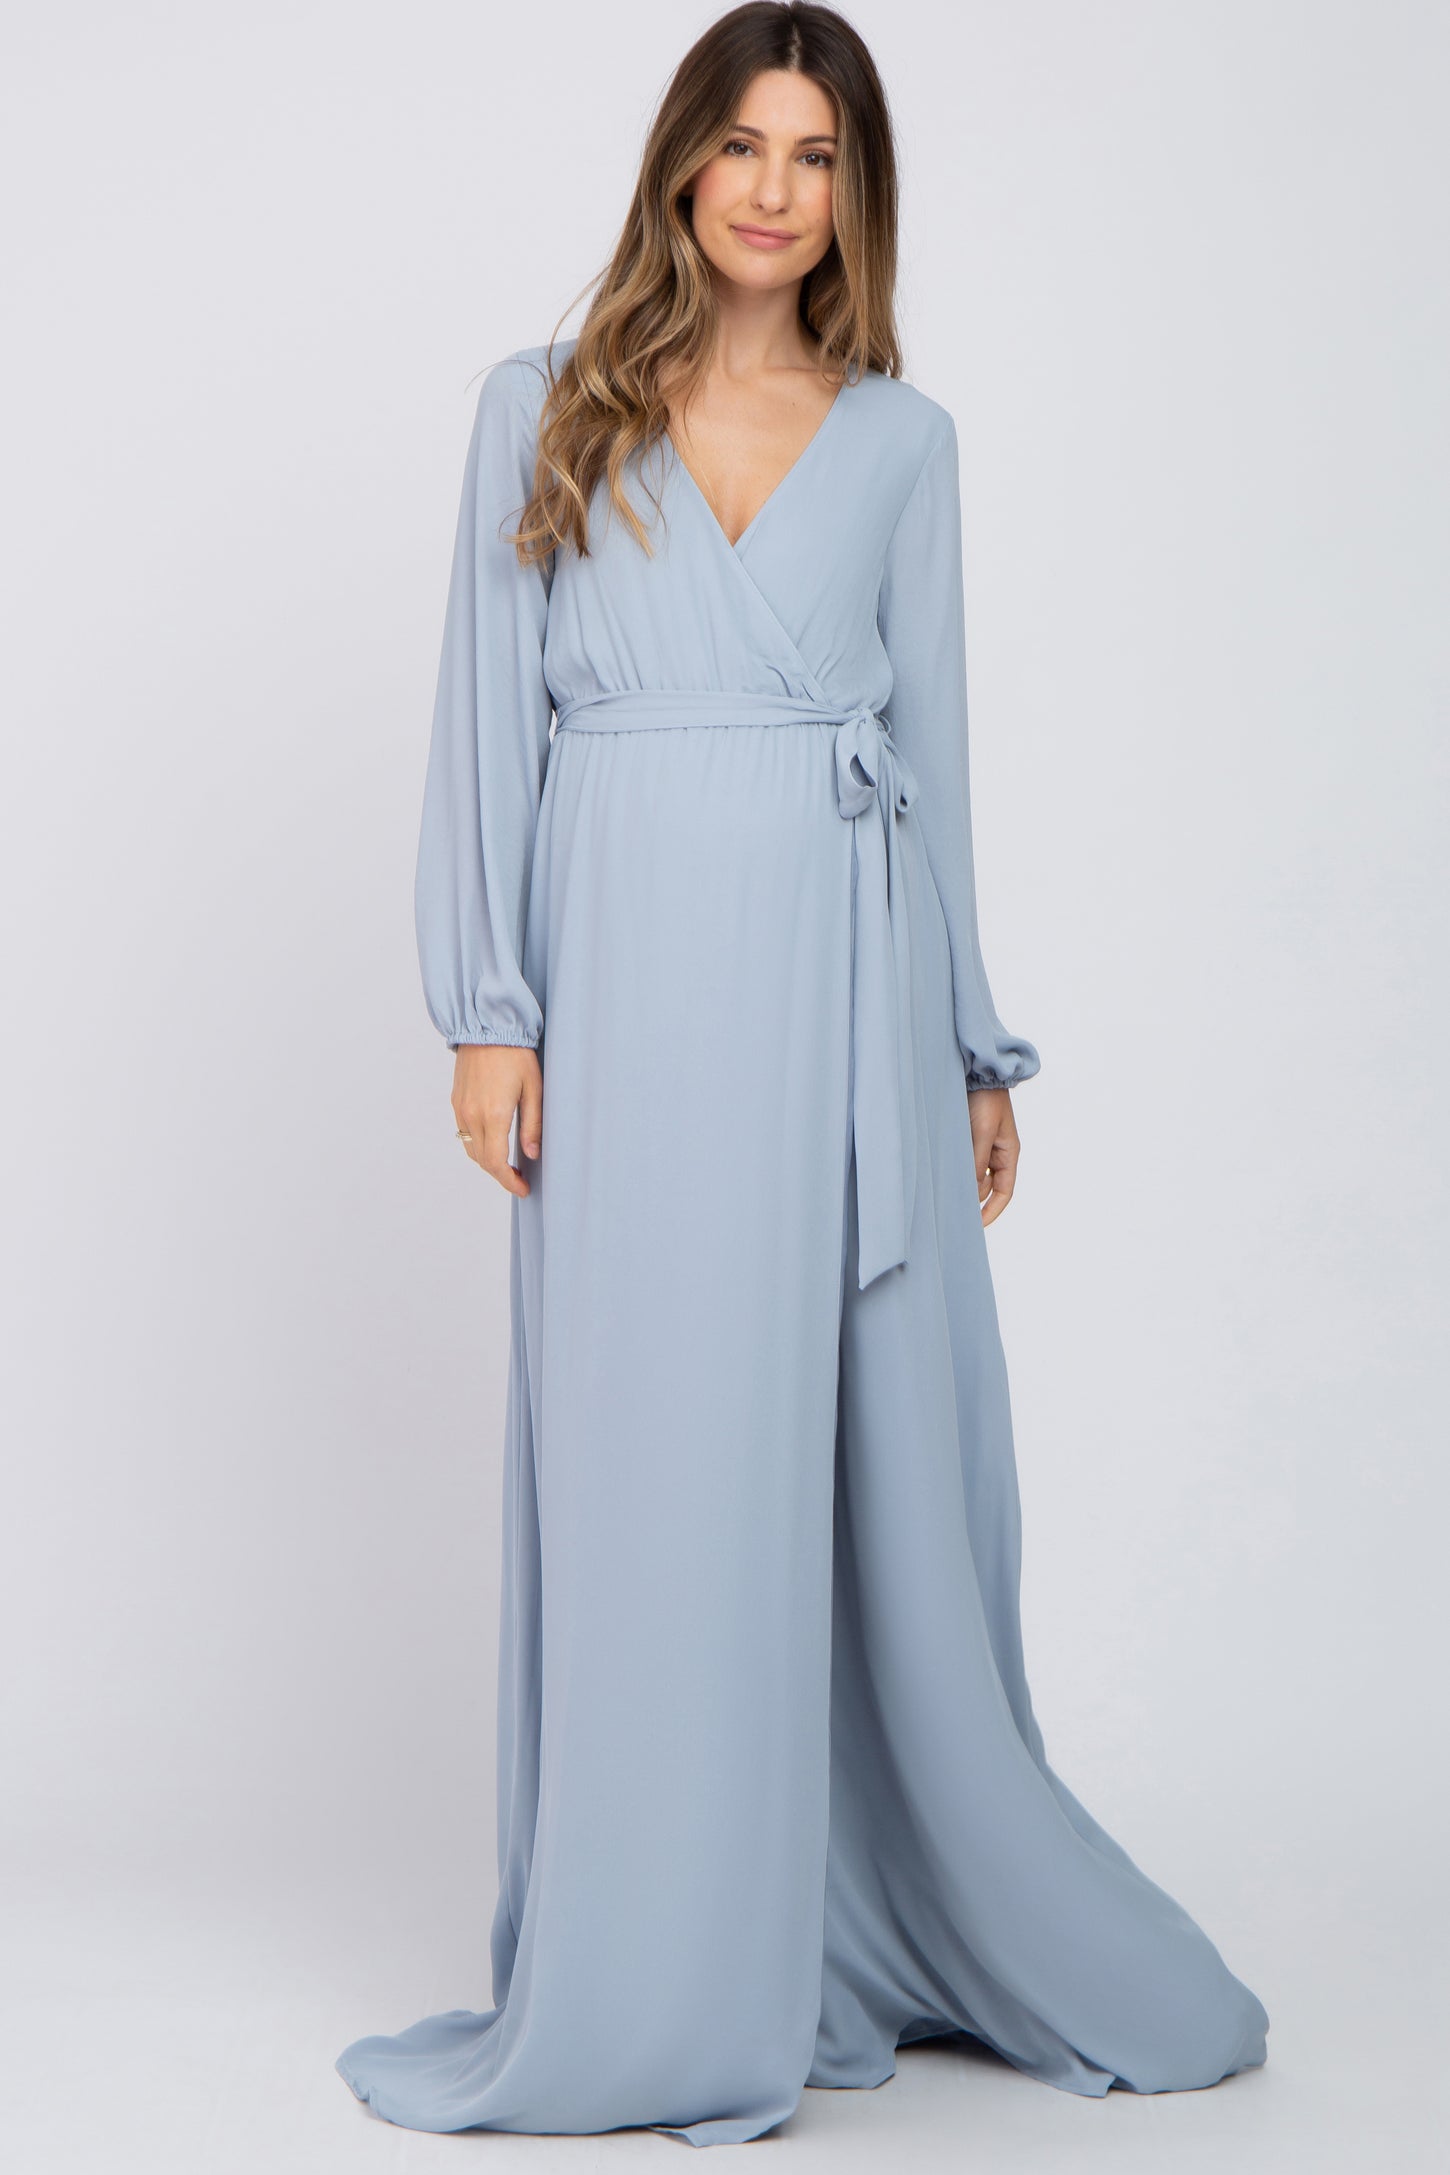 Light Blue Wrap Front Chiffon Maternity Gown – PinkBlush